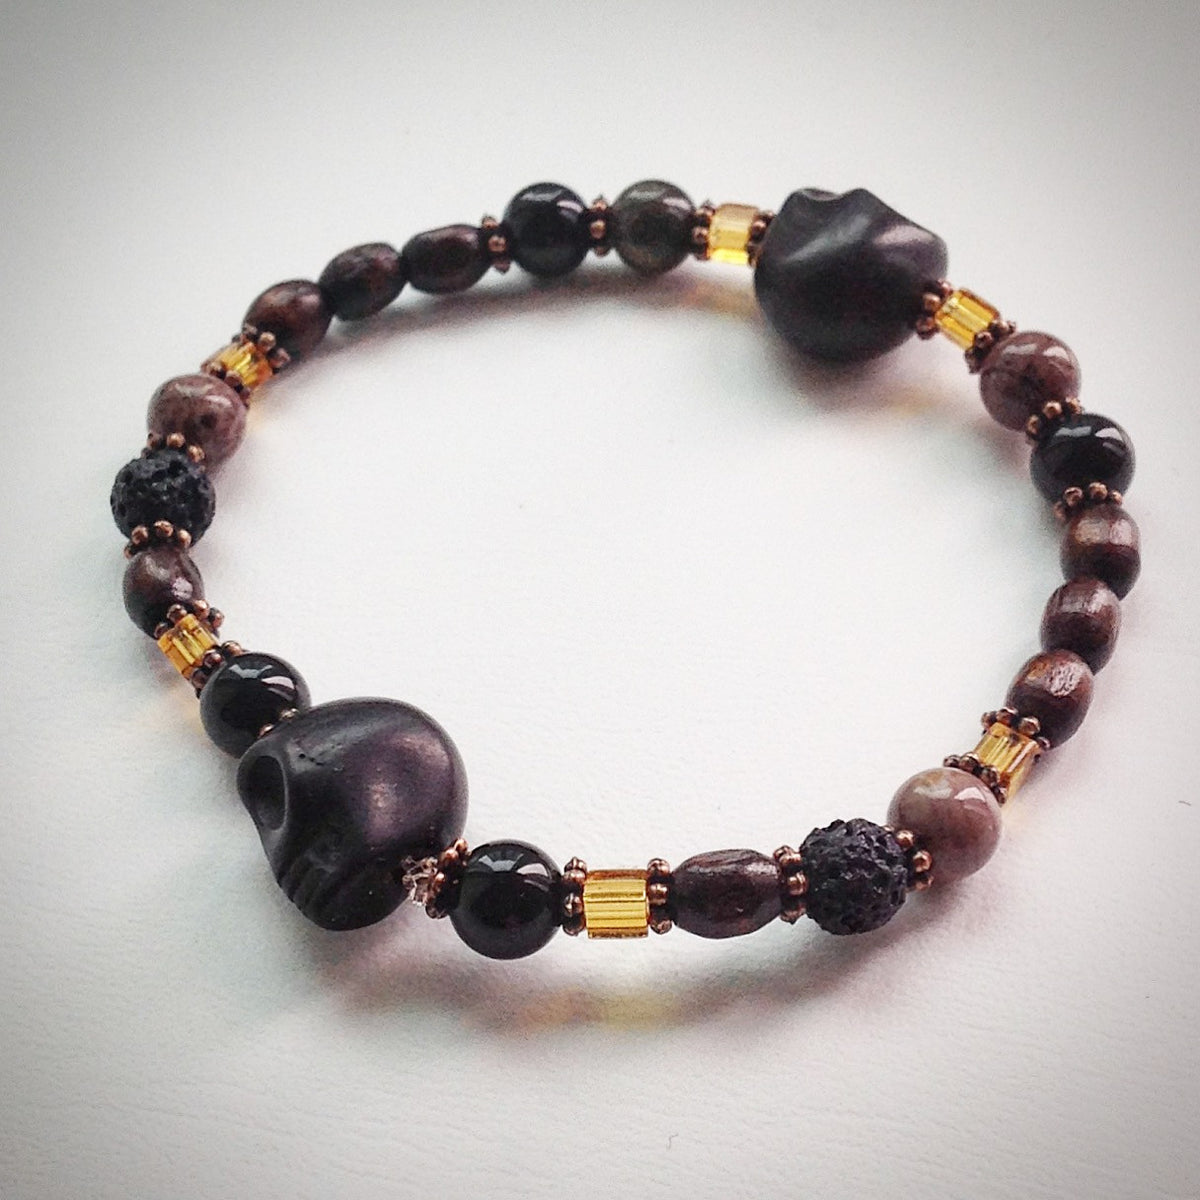 Beaded bracelet - Black Skulls, Jasper, Onyx, glass and wooden beads ...